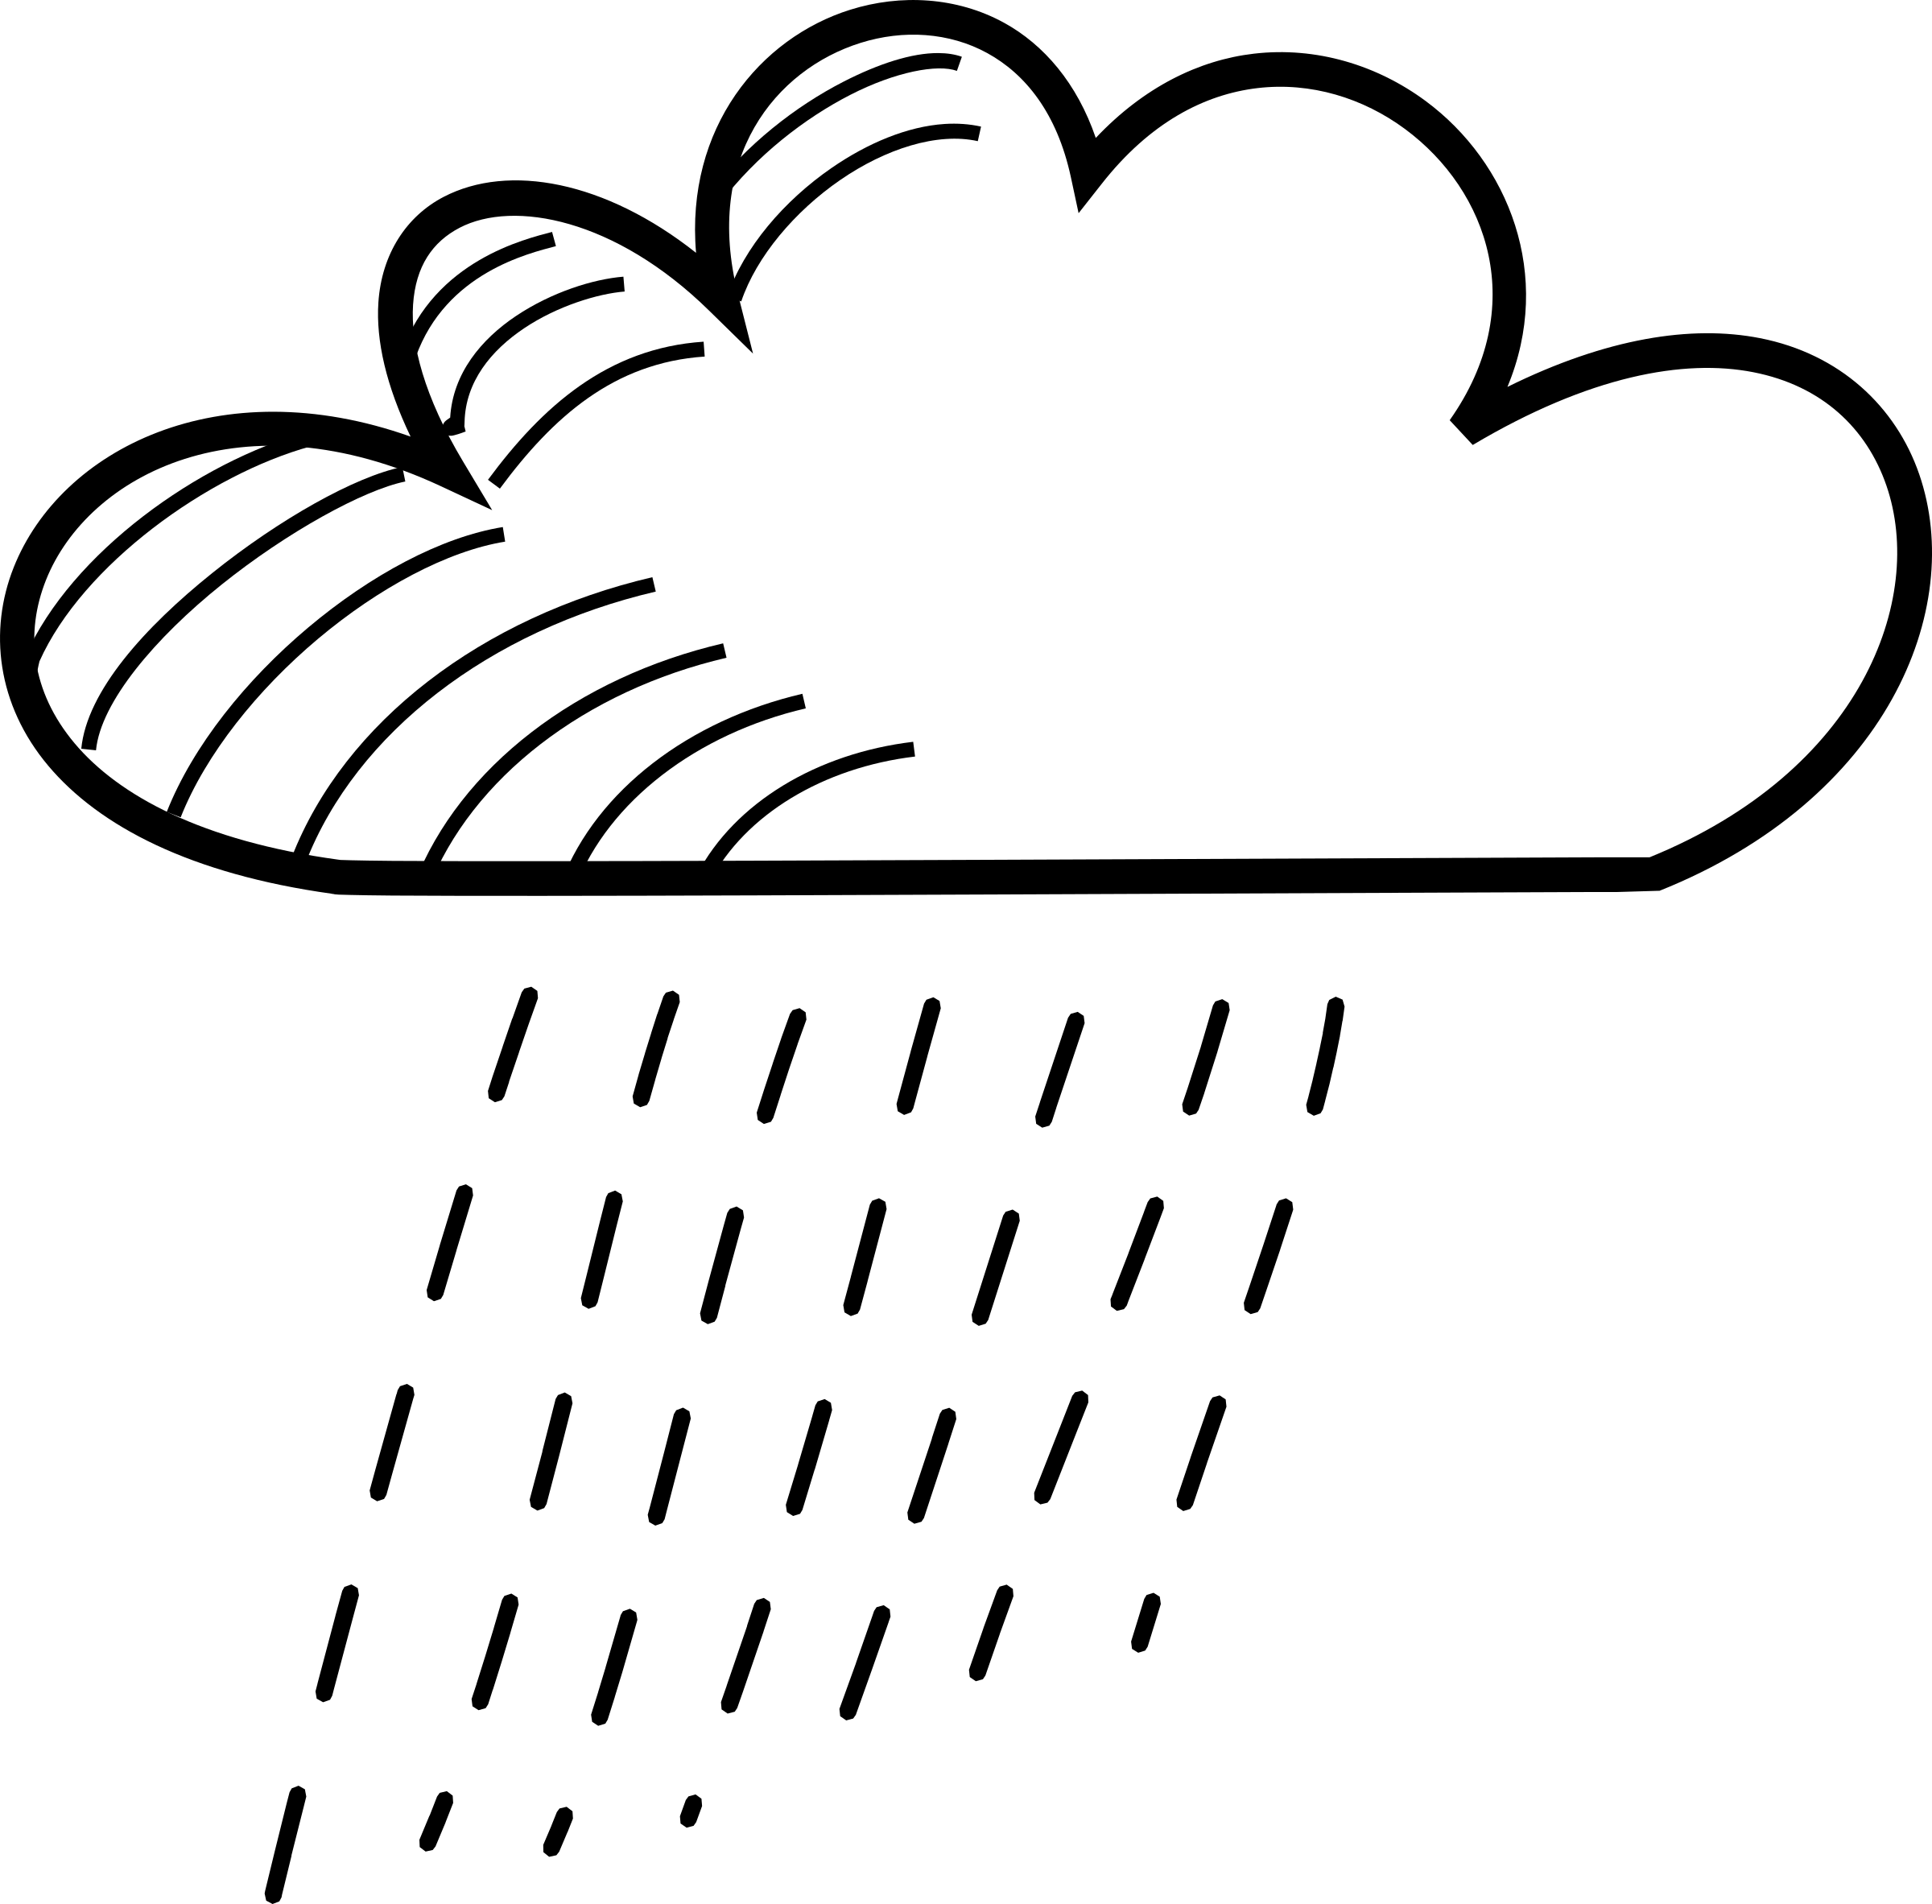 Cloud clipart text. Rainy stick figure icons